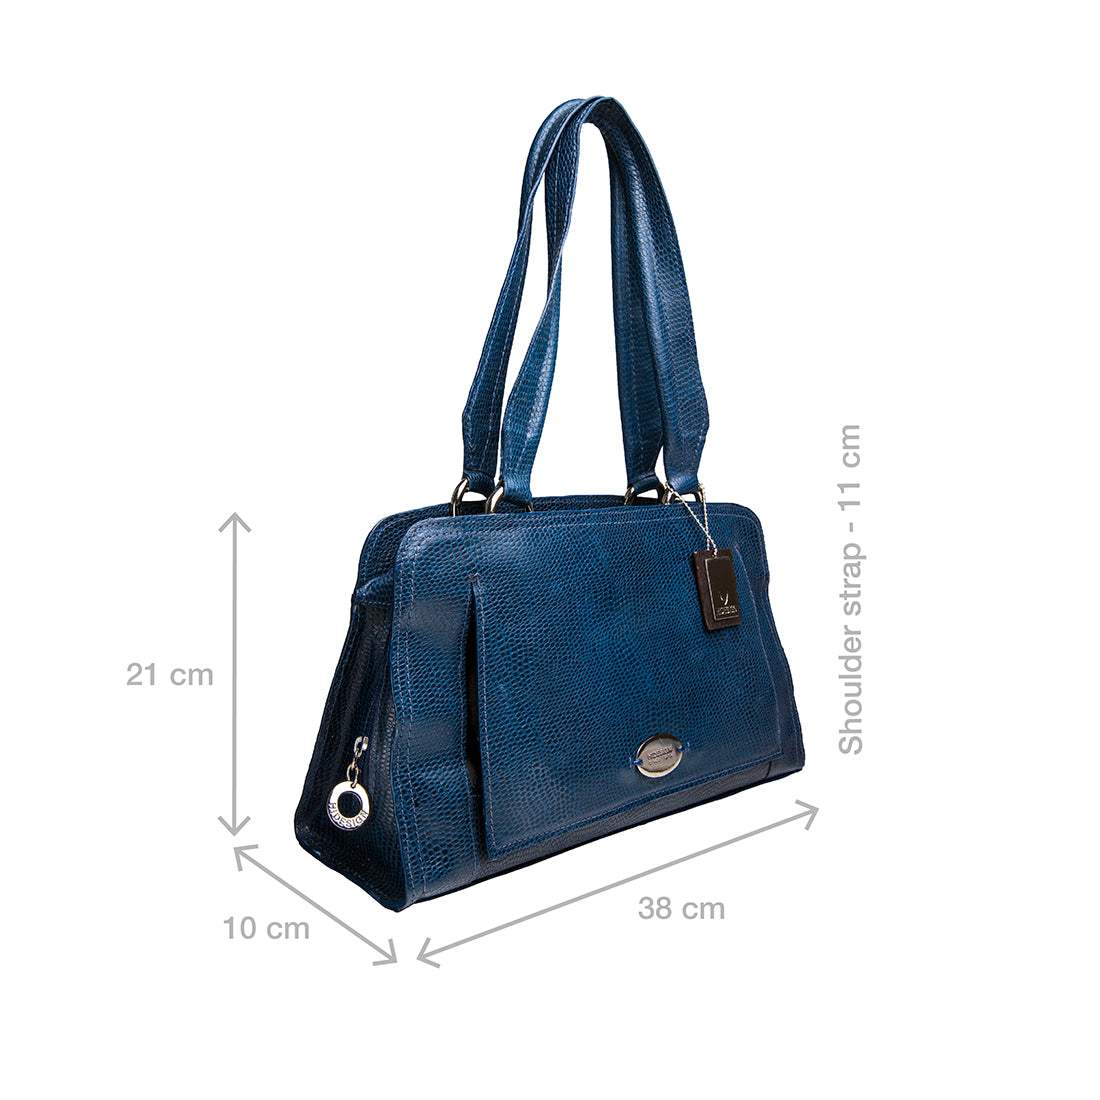 Buy Tan Claea 02 Tote Bag Online - Hidesign